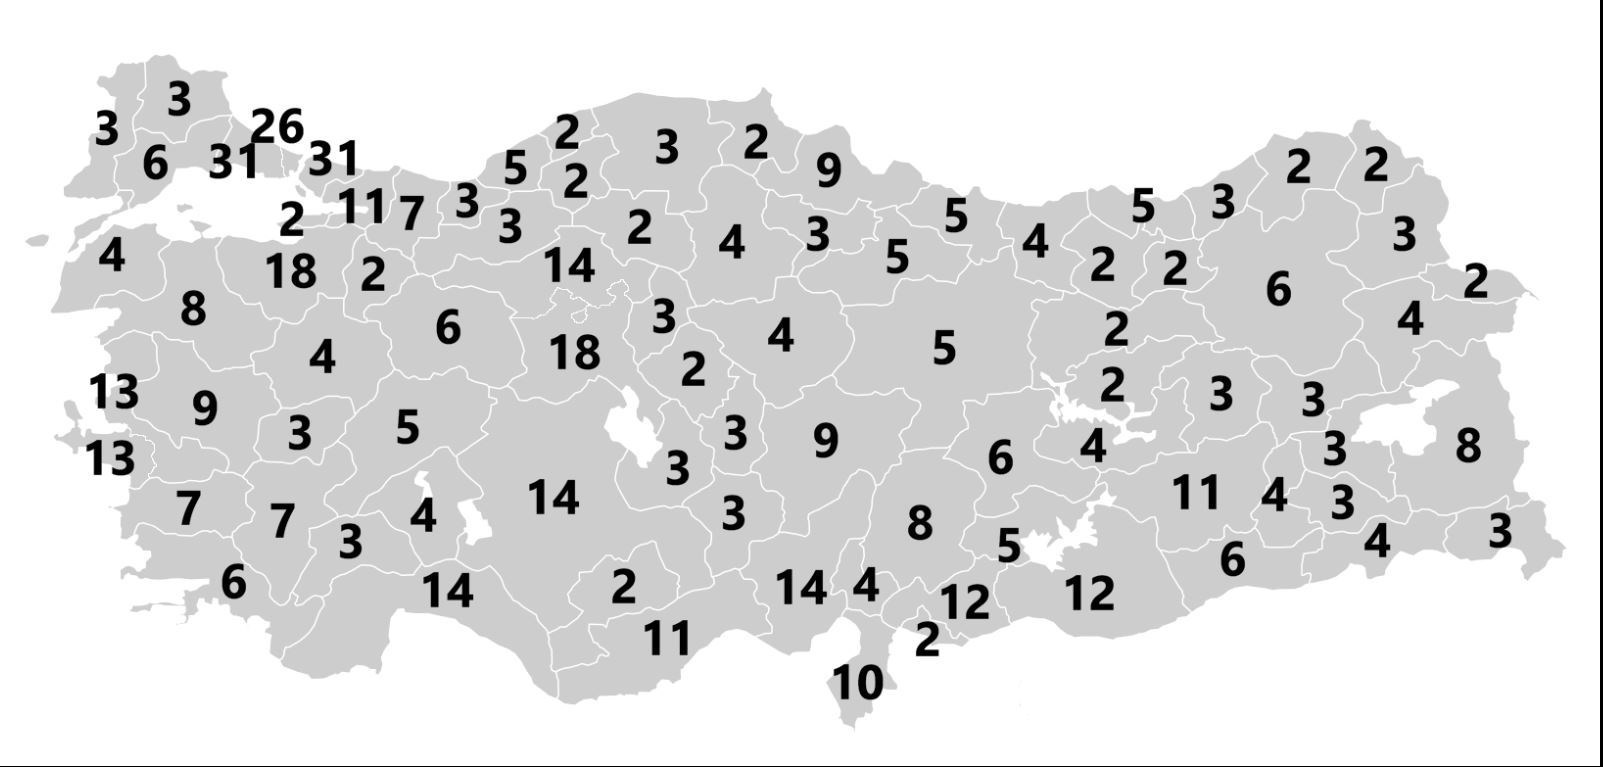 نگاهی به سیستم انتخابات پارلمانی در ترکیه